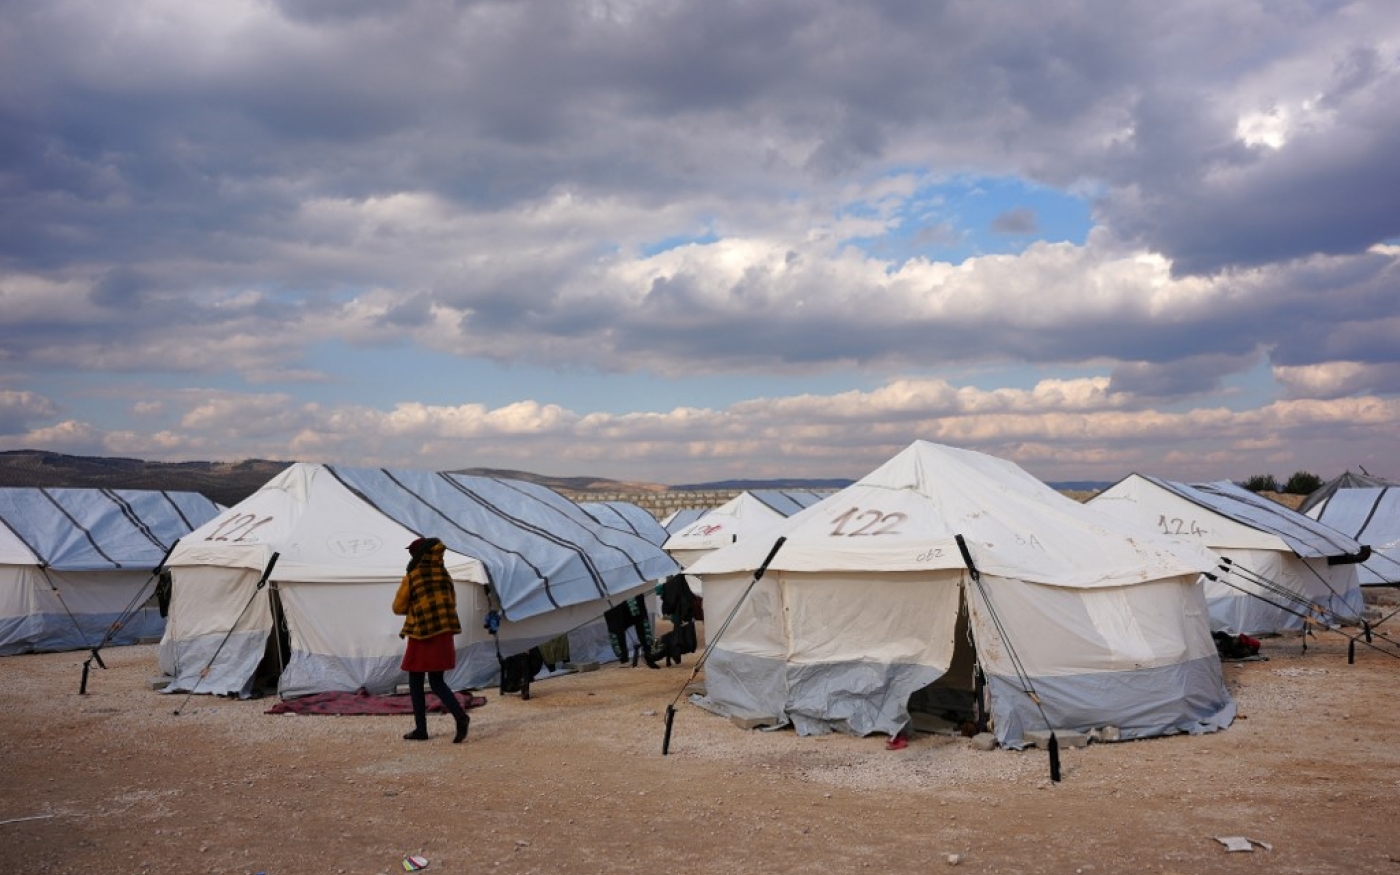 Un Syrien, déplacé à la suite du tremblement de terre meurtrier qui a frappé la Turquie et la Syrie, passe devant des tentes dans un camp temporaire, dans la campagne de Jandairis, dans le nord-ouest de la Syrie, le 11 février 2023 (AFP/Rami al-Sayed)